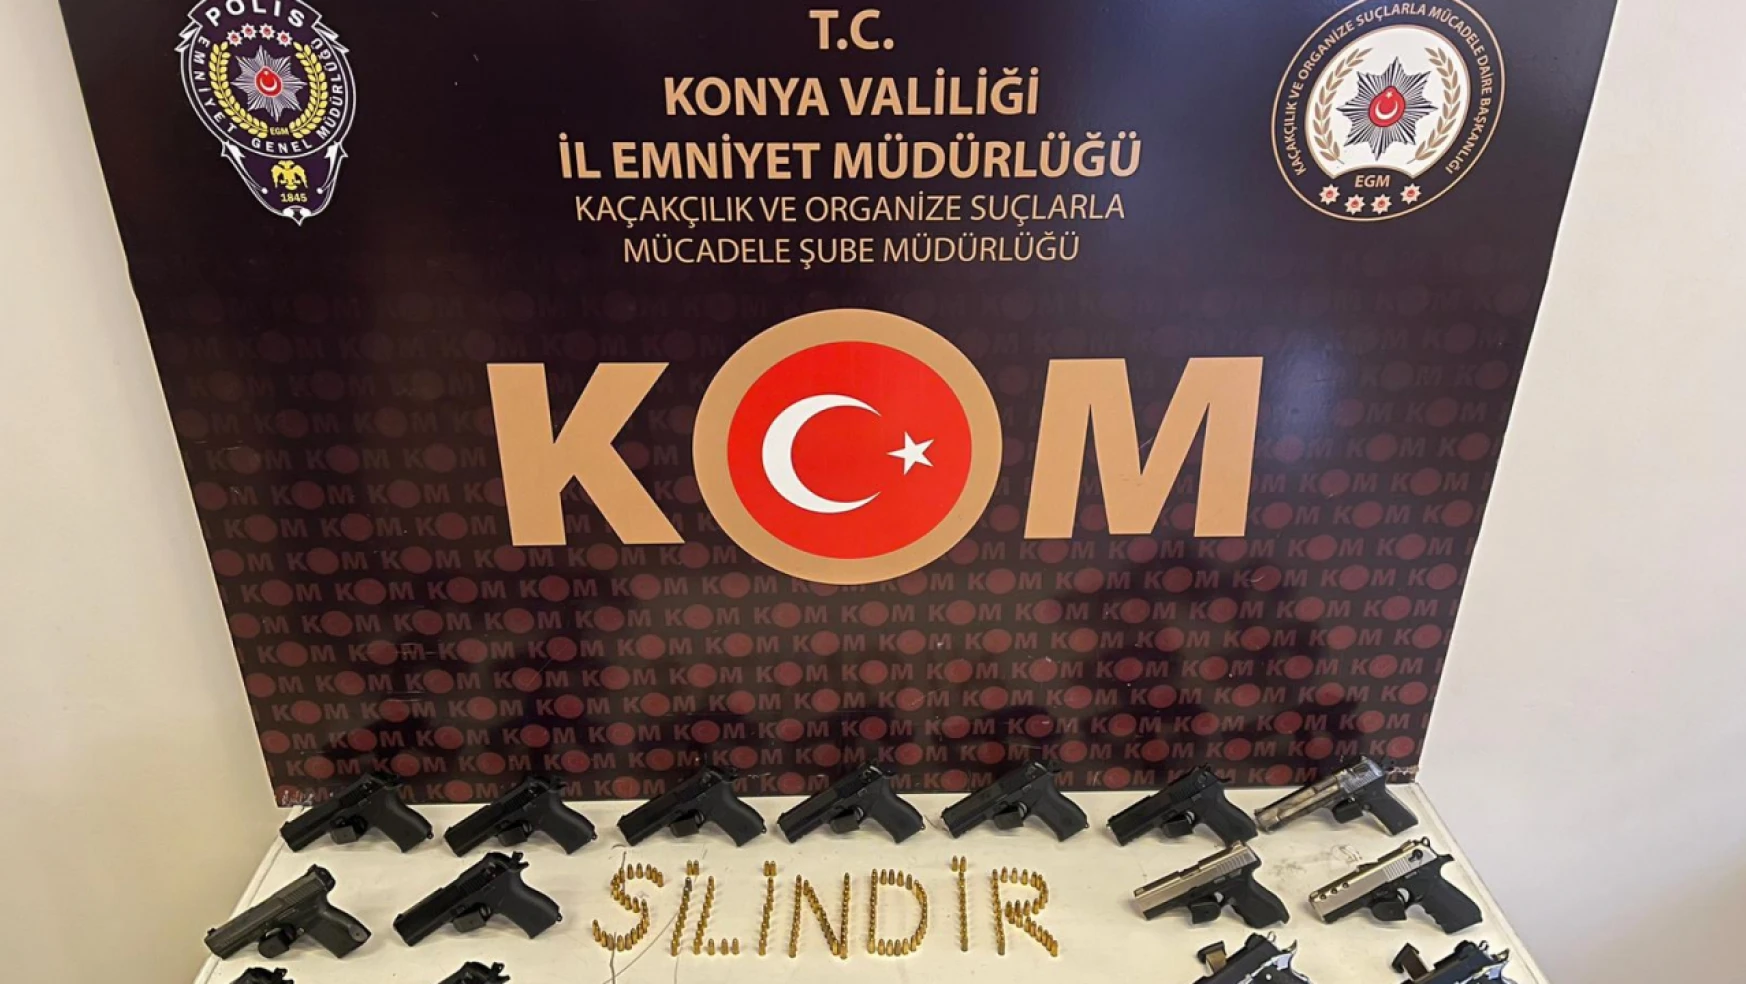 Konya'da 'silindir' operasyonu kapsamında 4 kişi gözaltına alındı